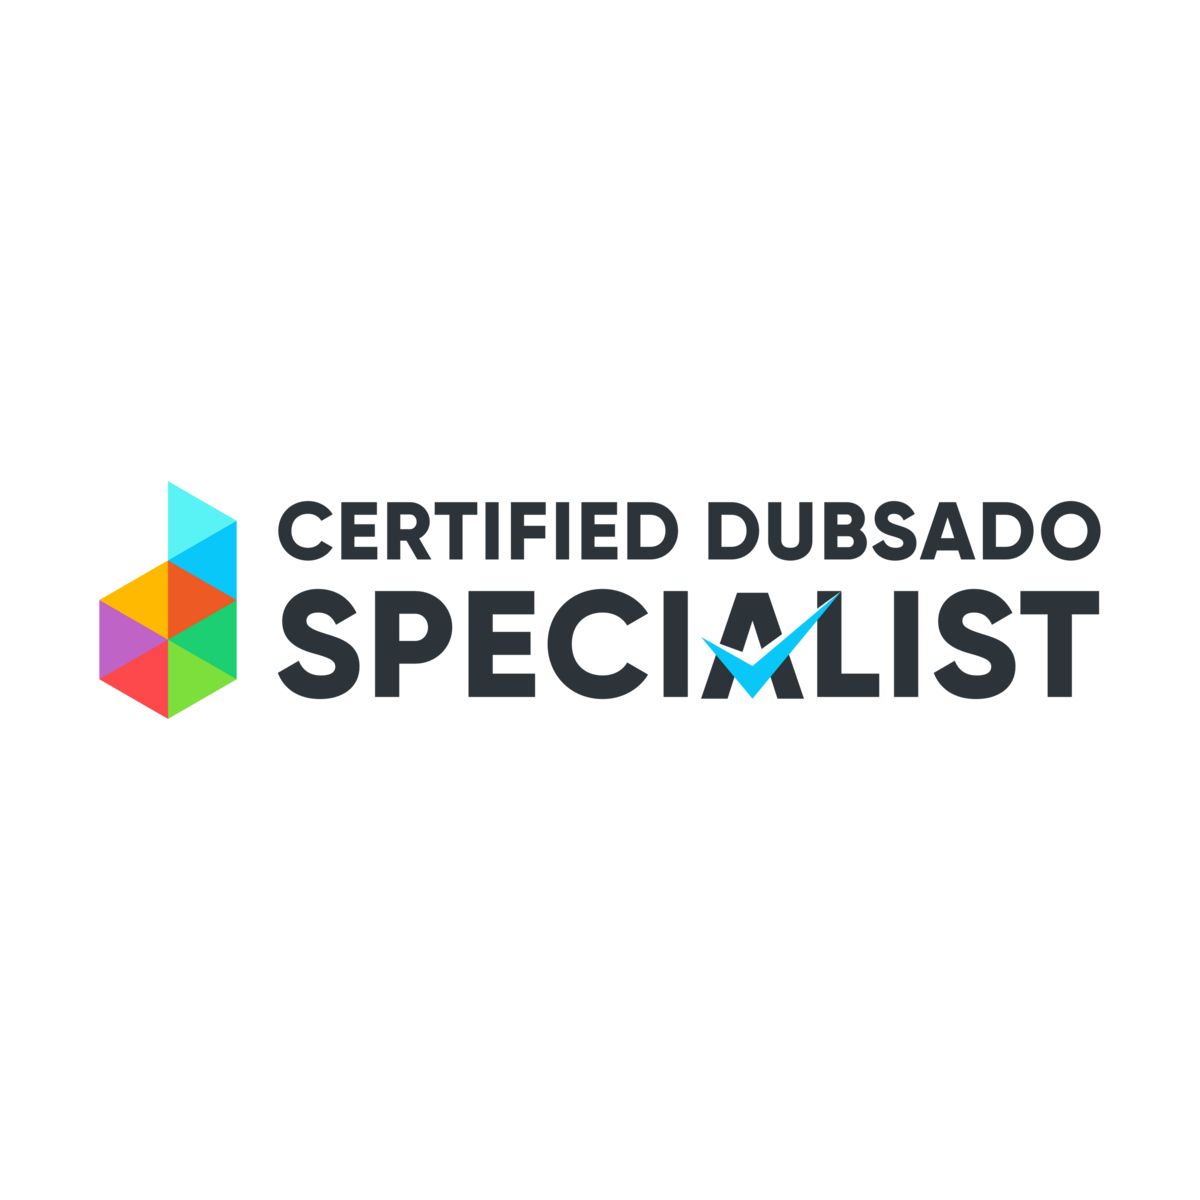 Dubsado Specialist Badge